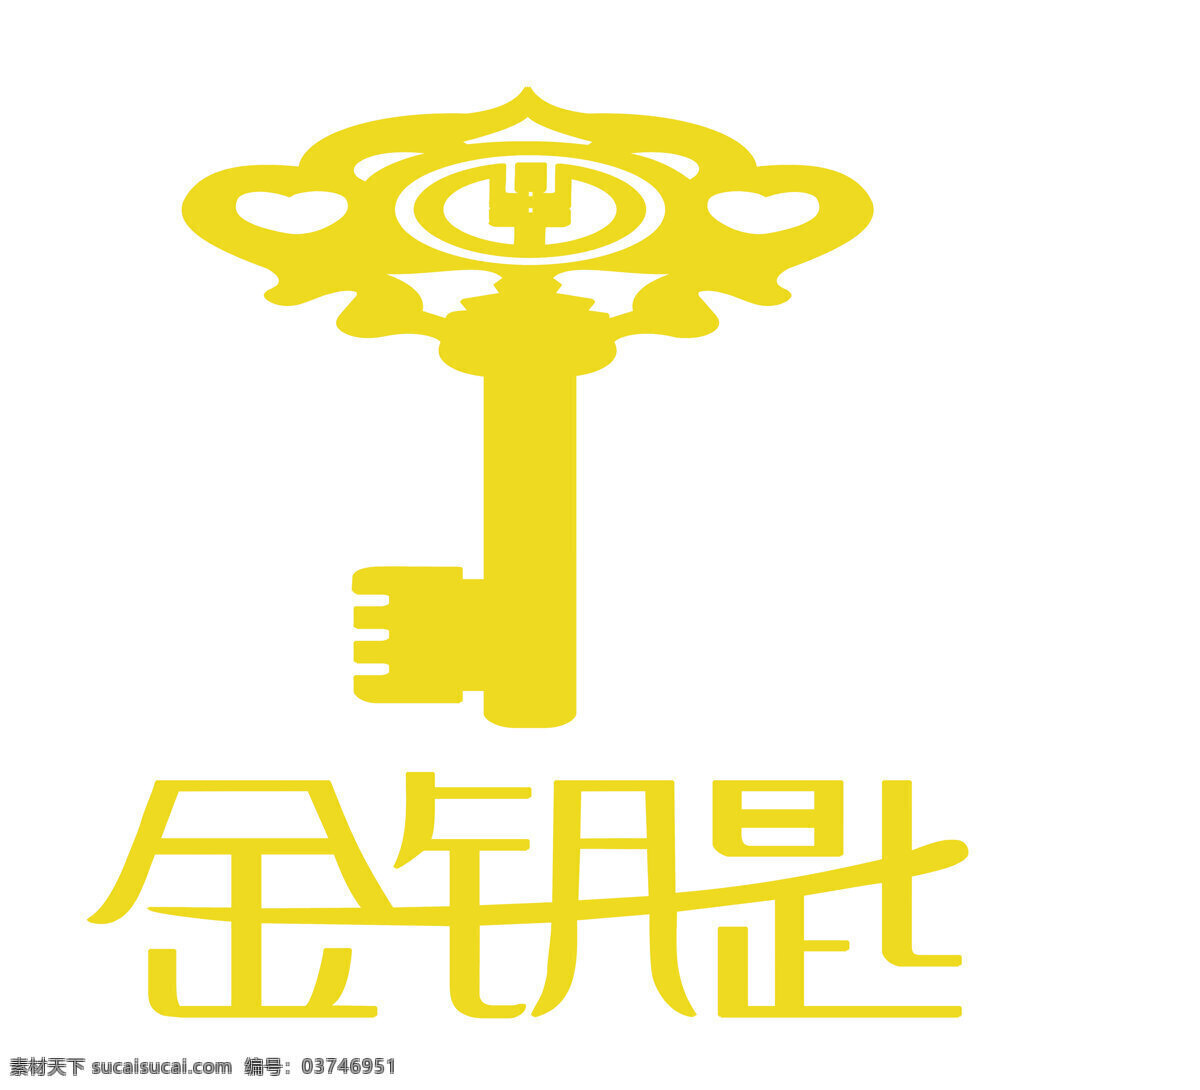 金钥匙 jinyaoshi 汽车图片 汽车logo 图标 车标 标志图标 企业 logo 标志